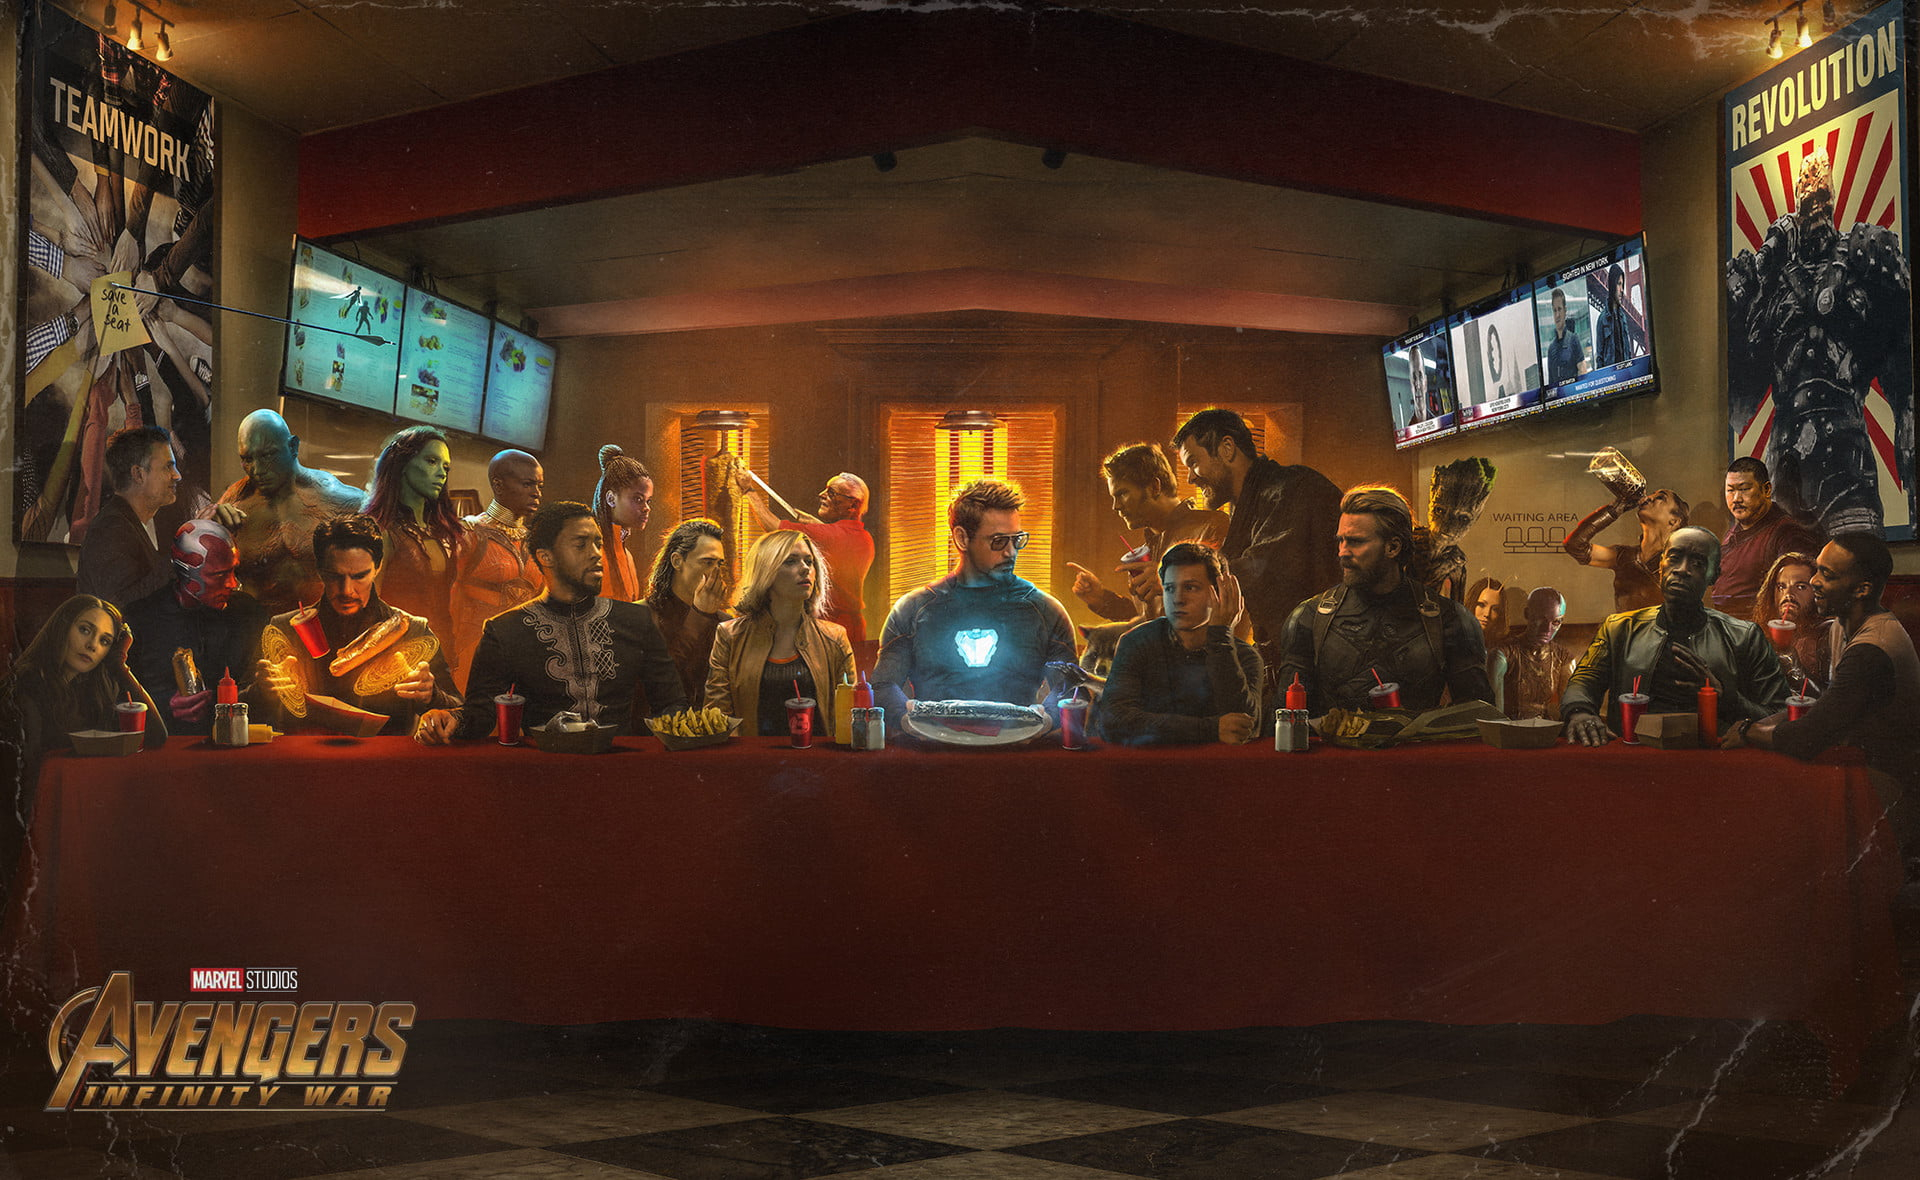 Marvel Avengers Infinity War poster wallpaper, Avengers Last Supper wallpaper